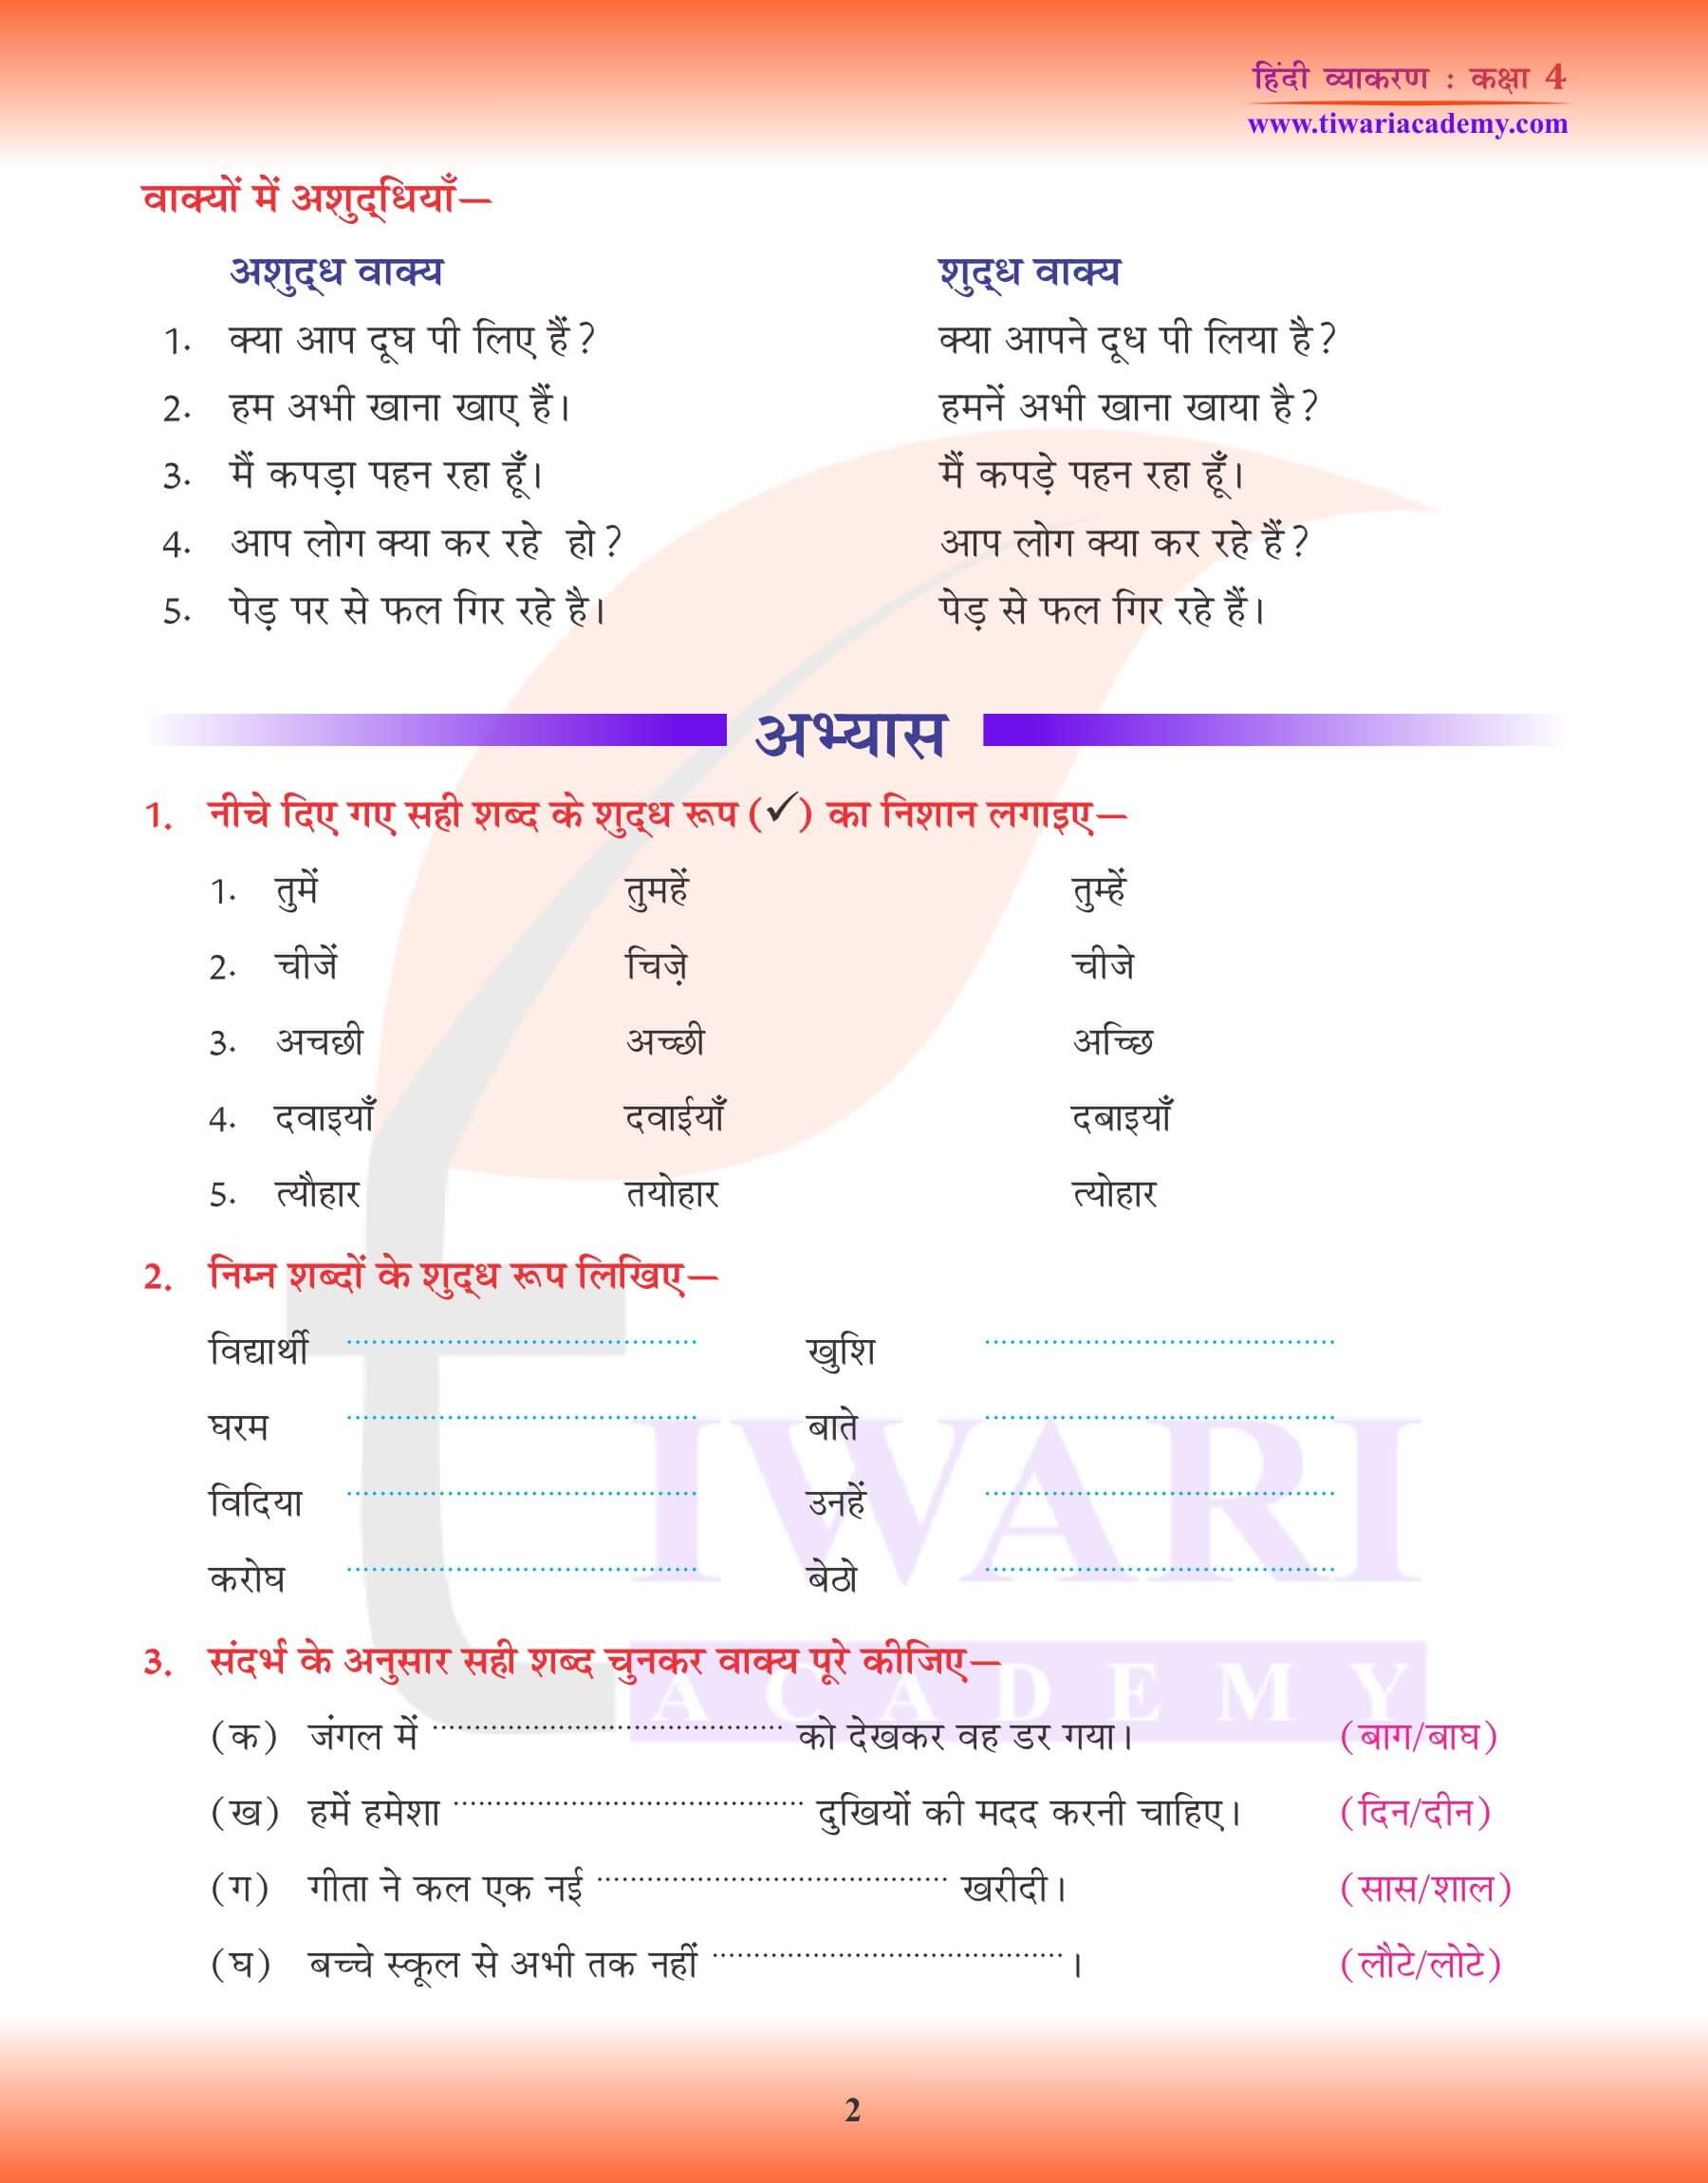 कक्षा 4 हिंदी व्याकरण में अशुद्धि शोधन